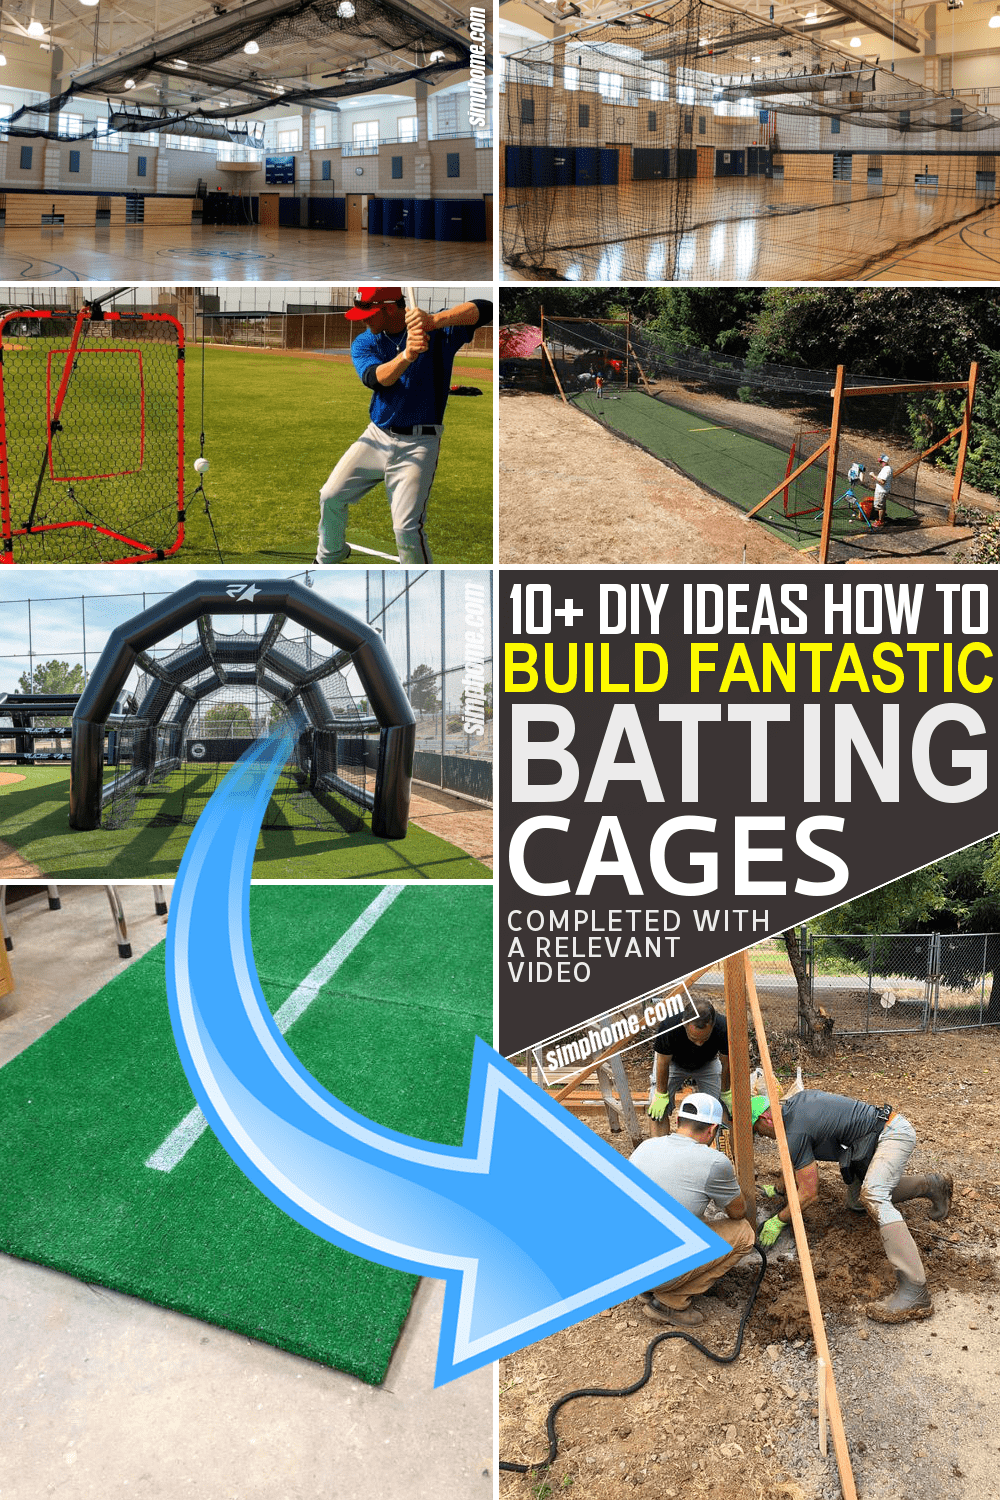 10 ideas how to build fantastic DIY batting cages via Simphome.com